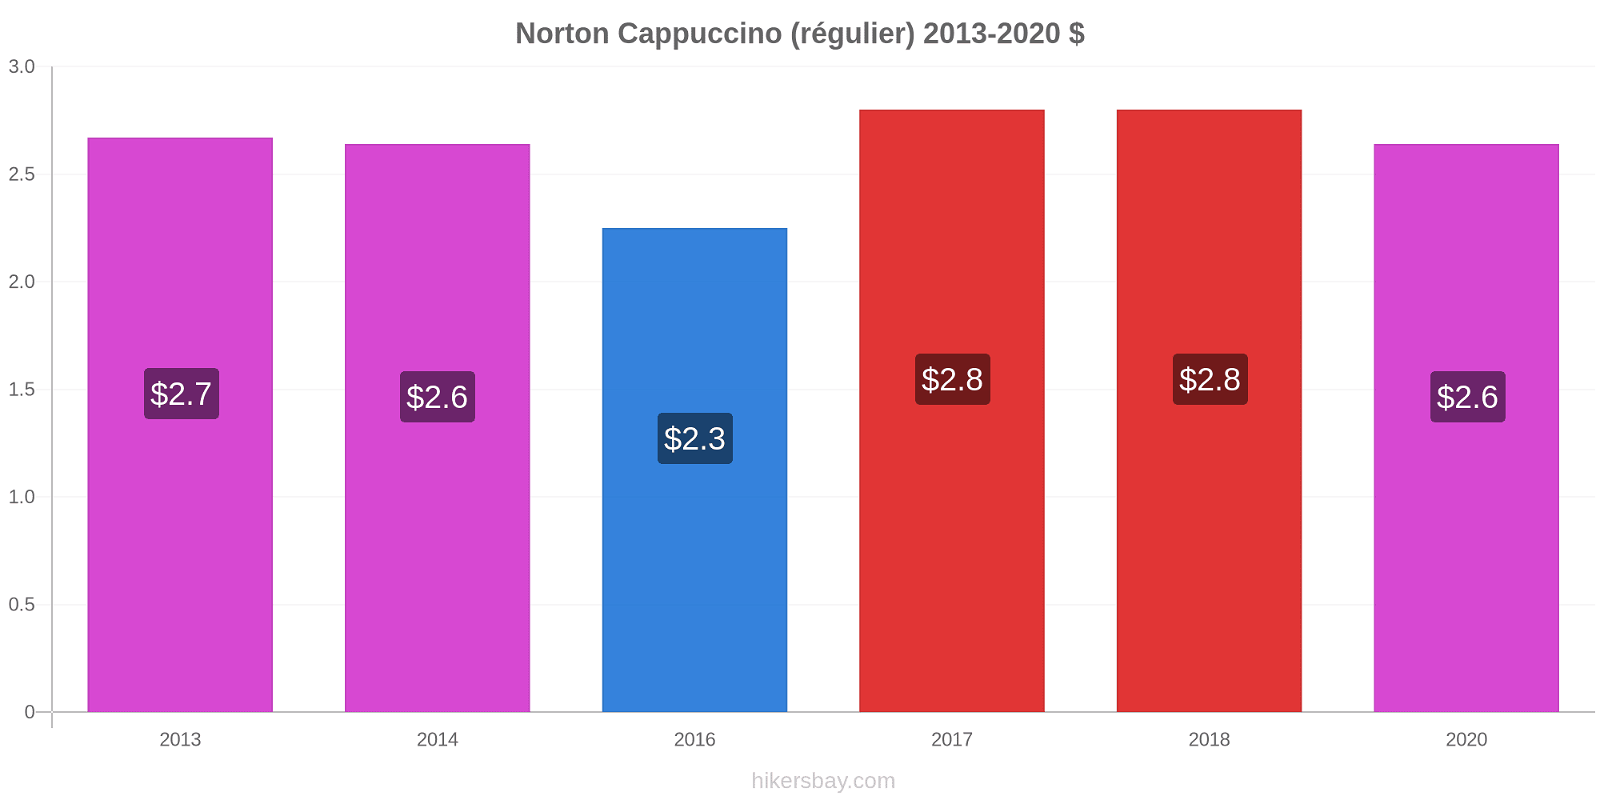 Norton changements de prix Cappuccino (régulier) hikersbay.com